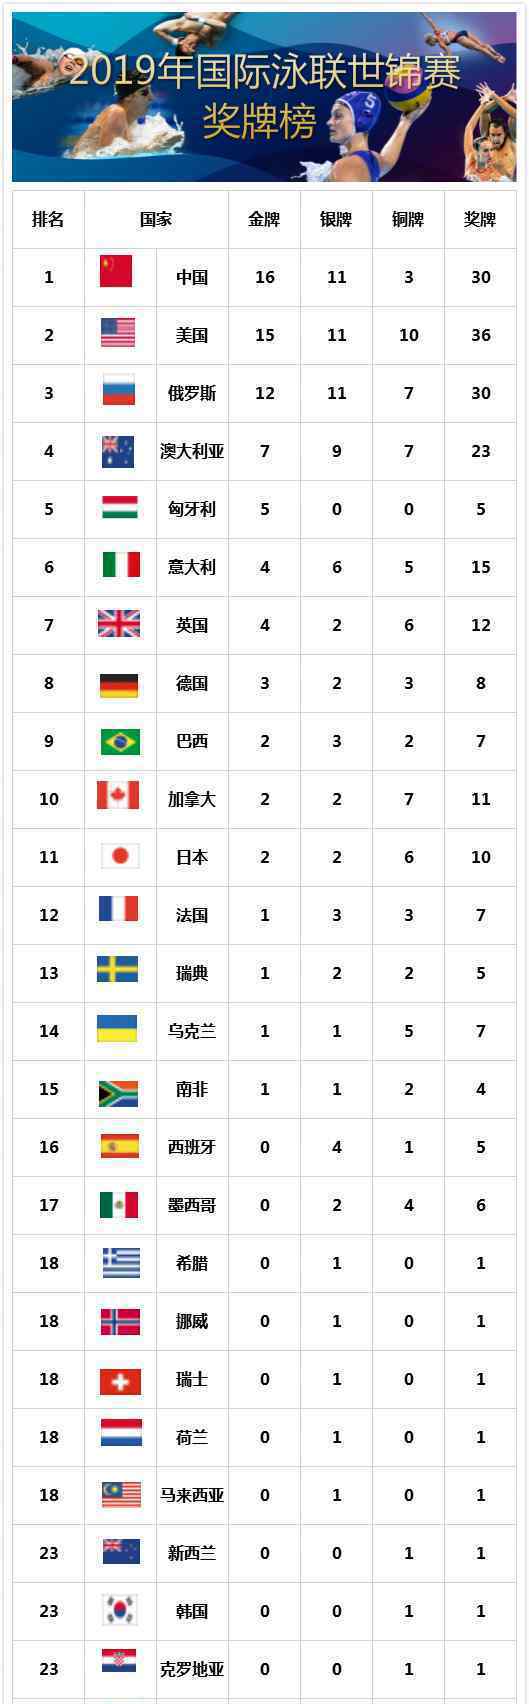 中国队金牌榜第一 中国获得几块金牌第二是谁